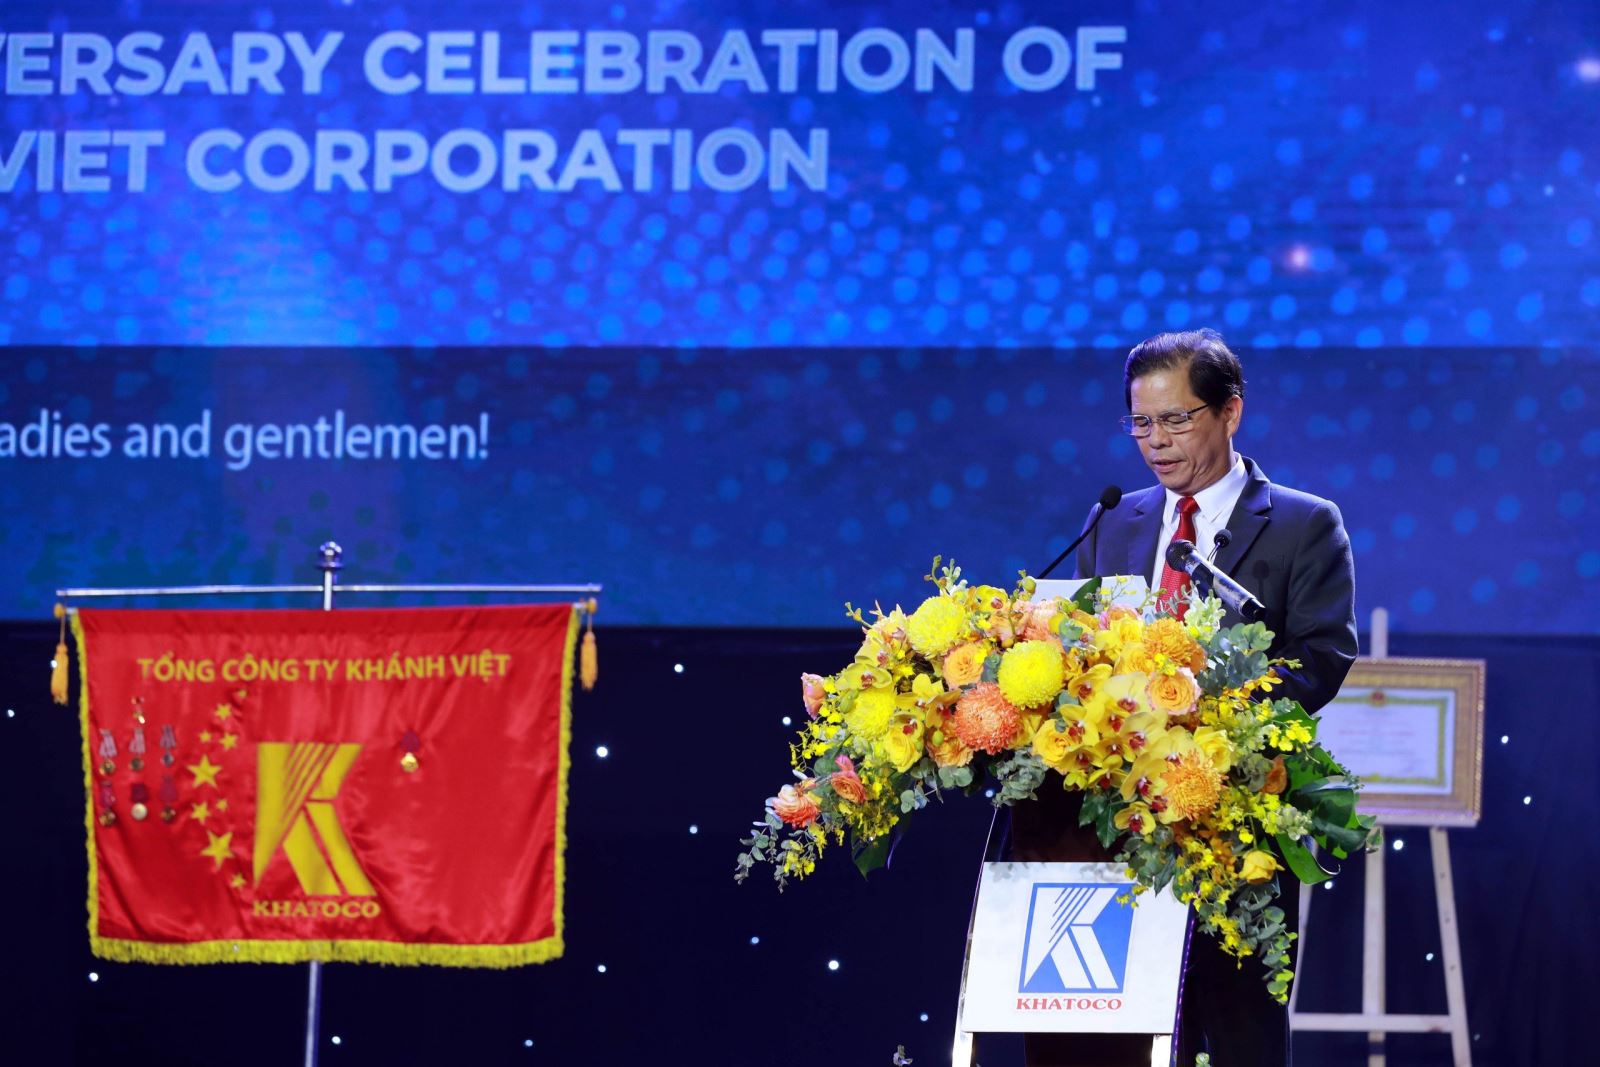 Ông Nguyễn Tấn Tuân - Phó Bí thư Tỉnh ủy, Chủ tịch UBND tỉnh Khánh Hòa phát biểu tại buổi lễ